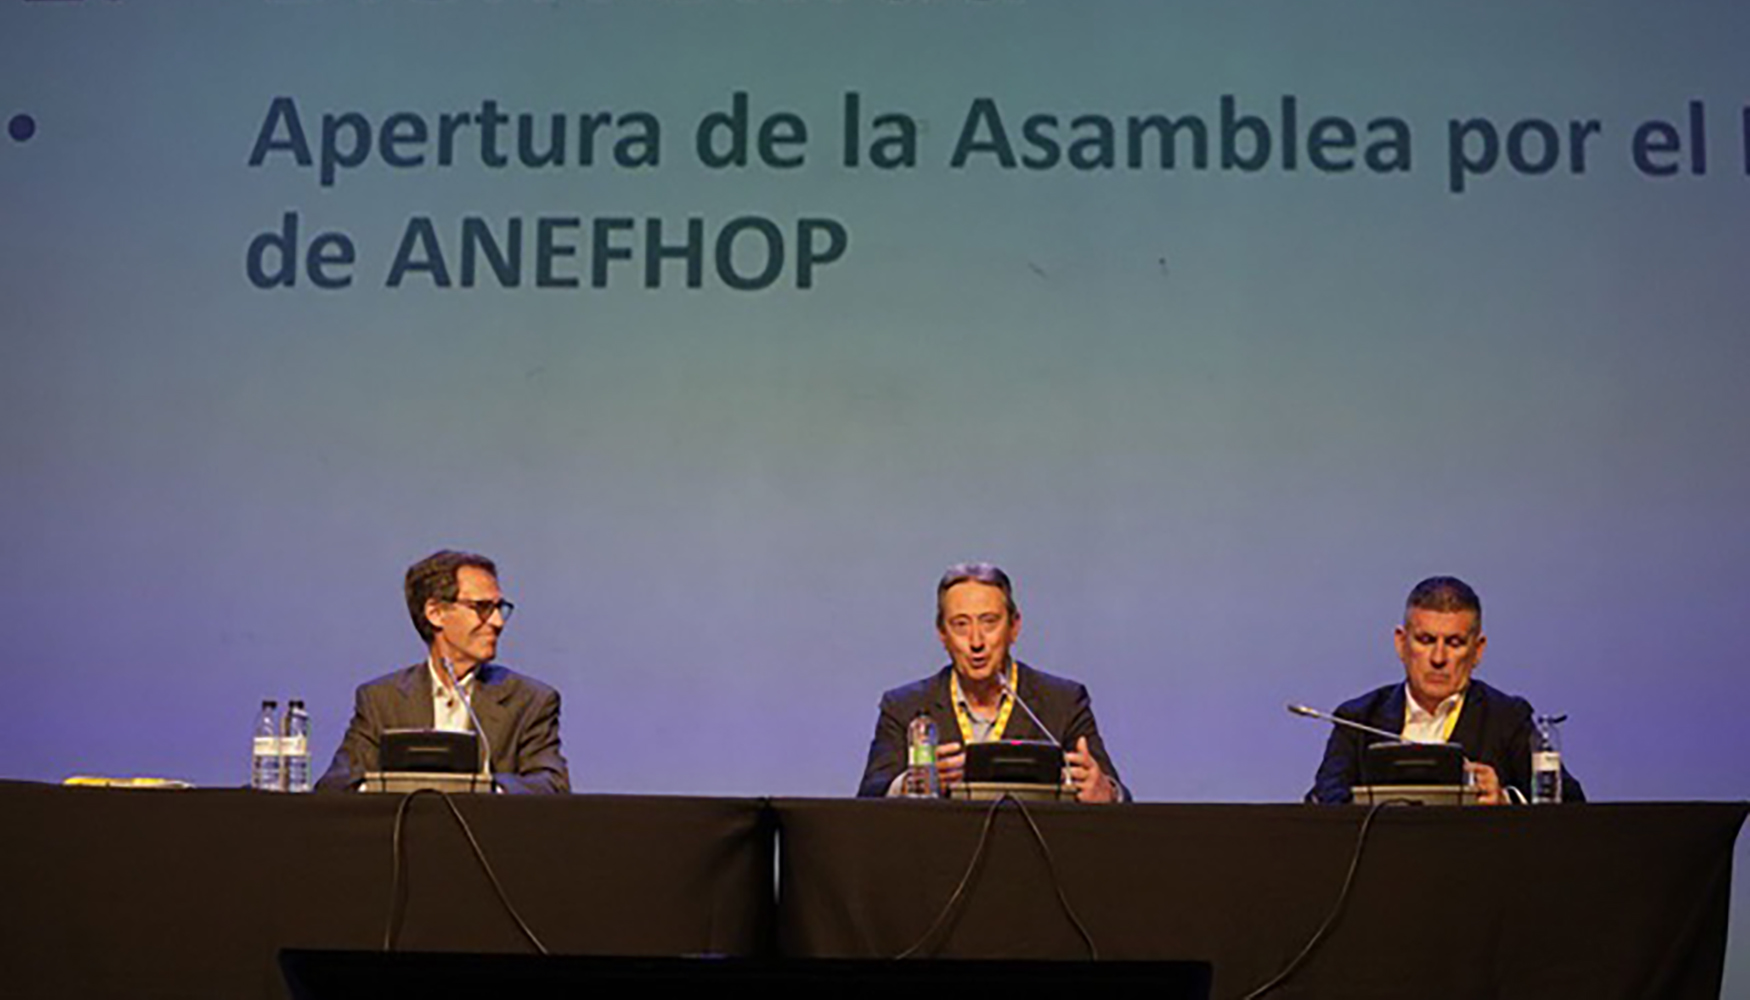 Asamblea general de Anefhop